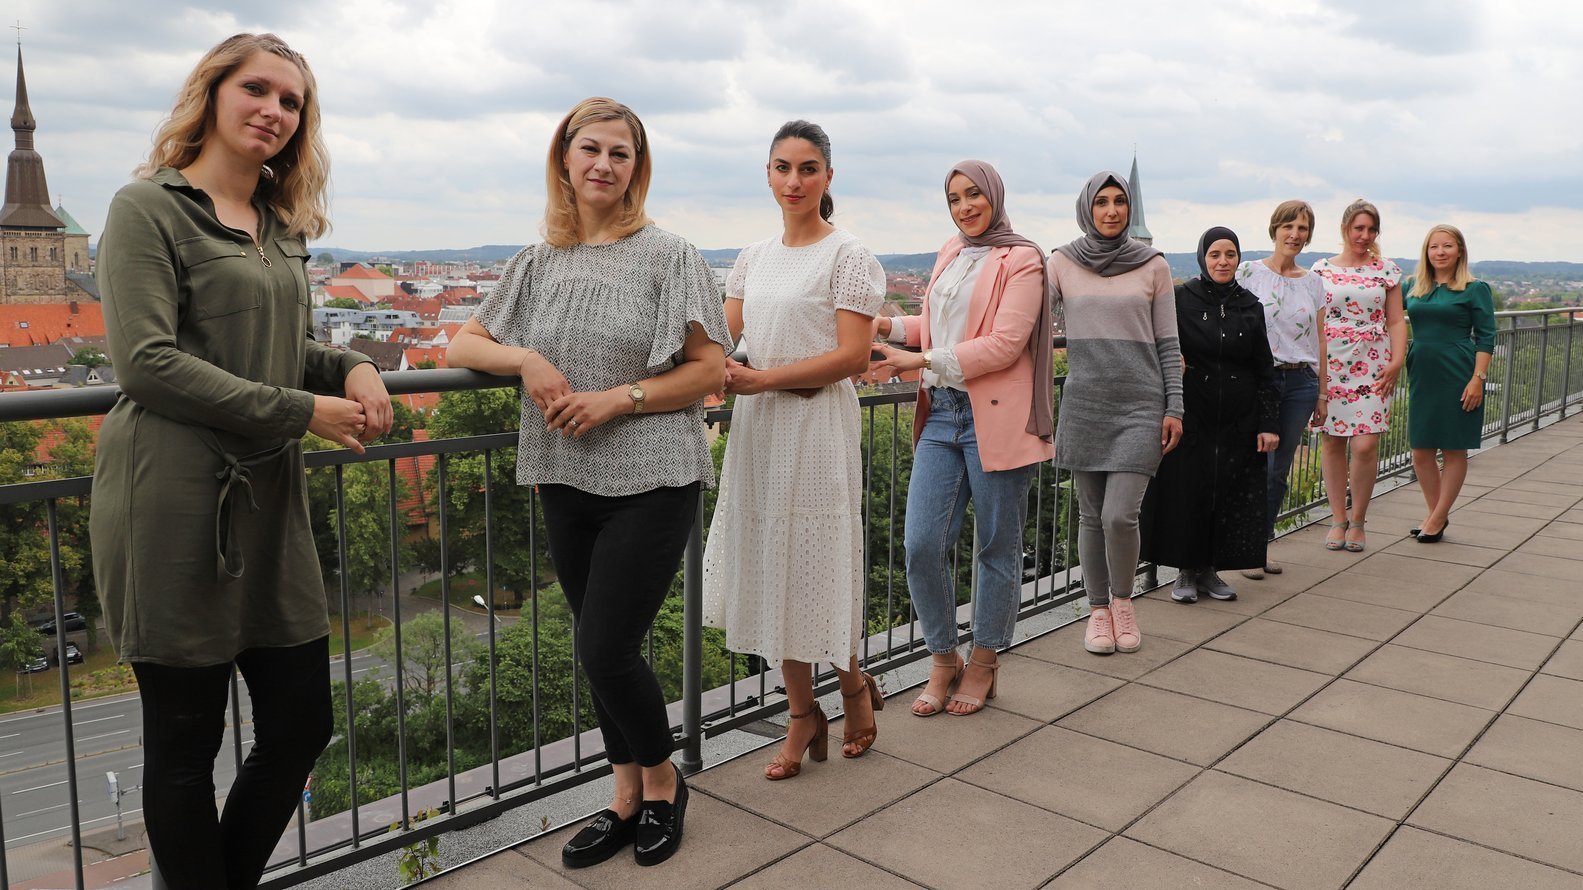 Familienbegleiterinnen der Stadt Osnabrück stehen auf einer Terrasse mit Blick über die Stadt